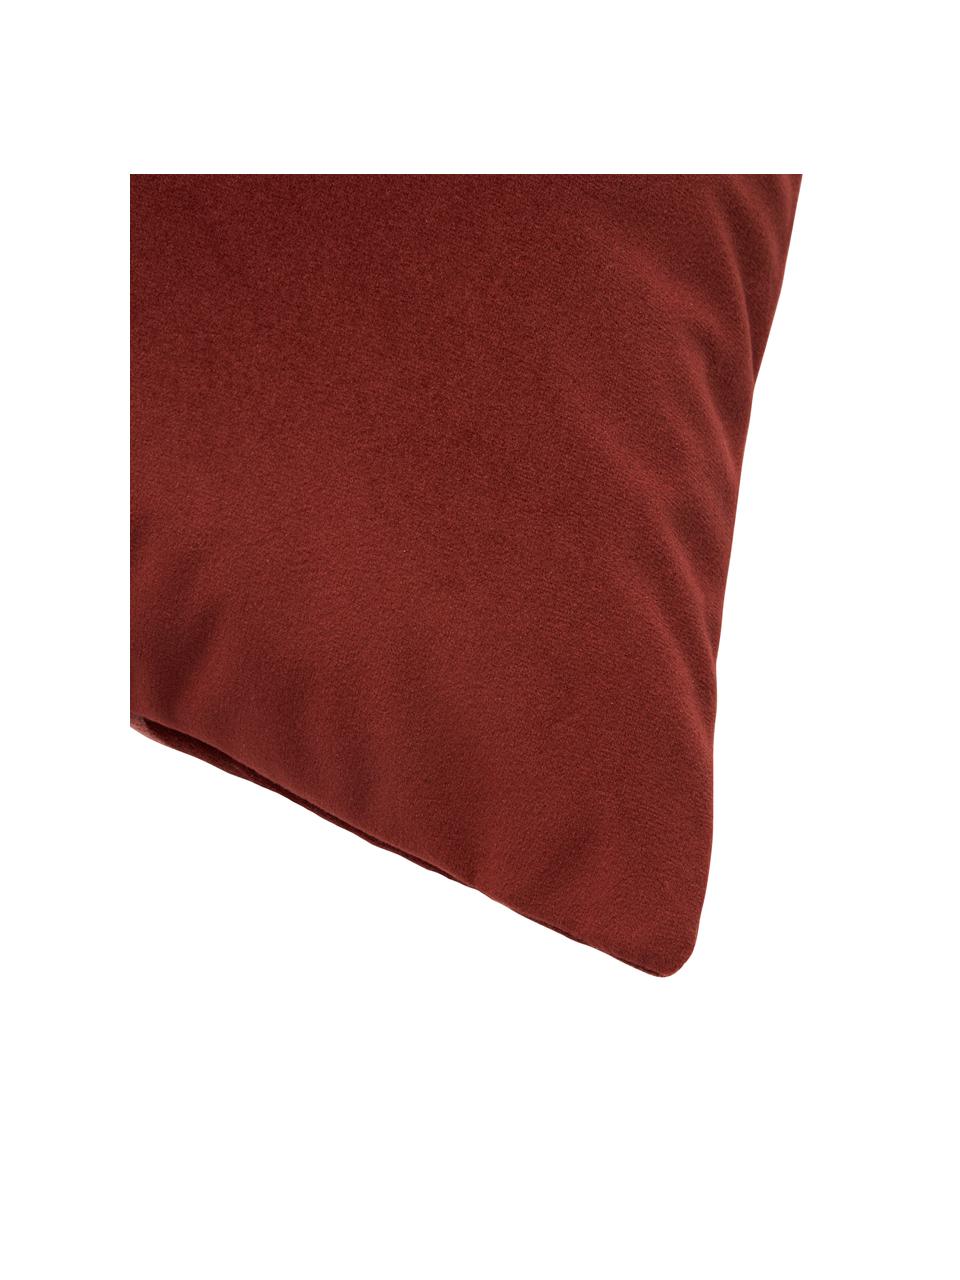 Poszewka na poduszkę z aksamitu Lenia, 100% aksamit poliestrowy, Brudny różowy, czerwony, S 45 x D 45 cm